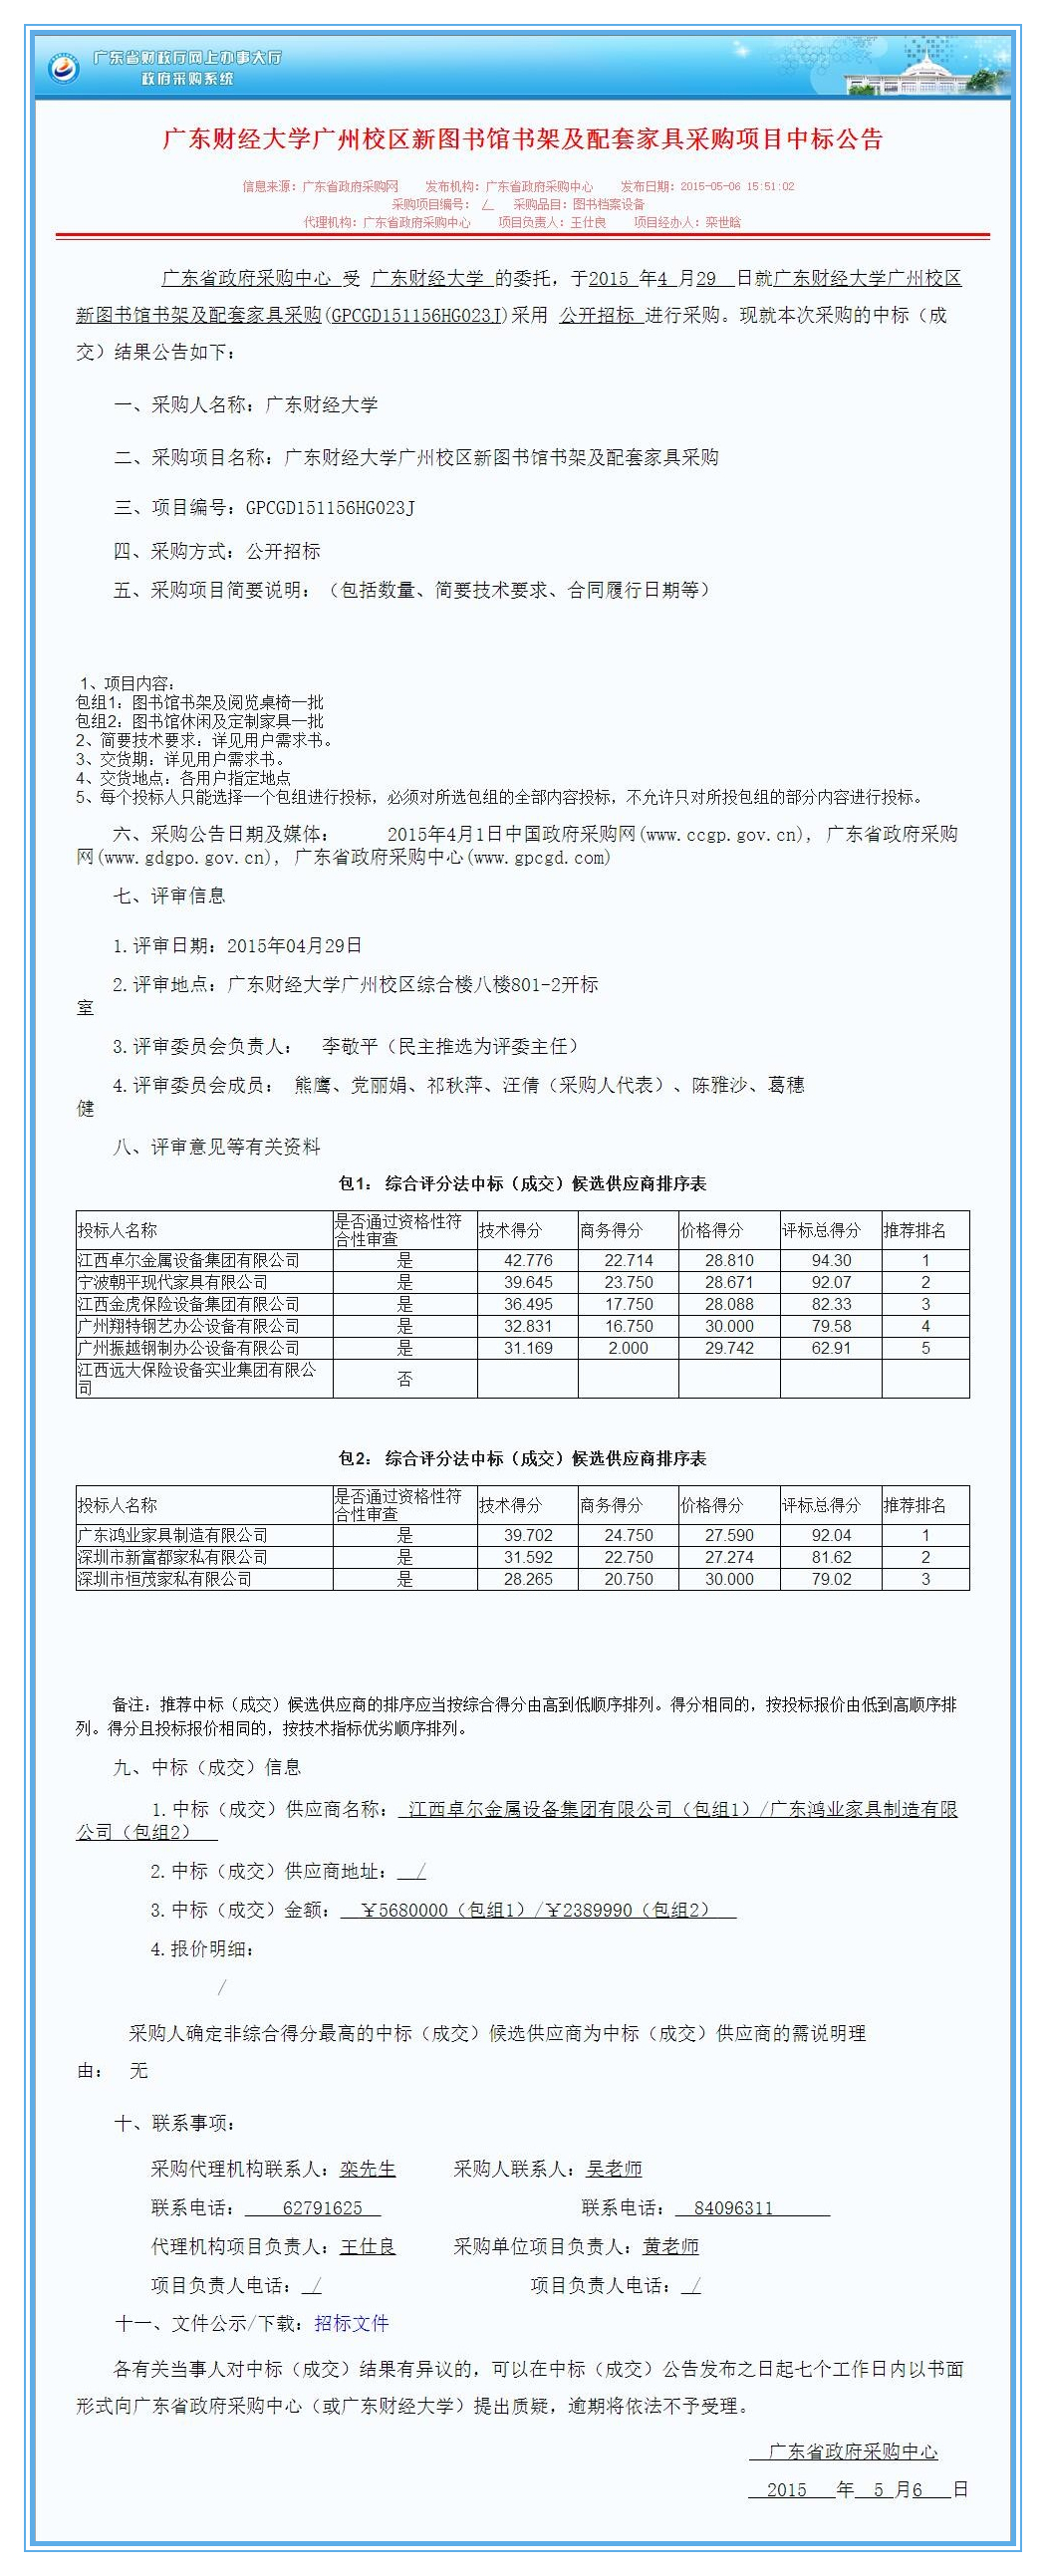 广东财经大学广州校区新图书馆书架及配套家具采购项目中标公告